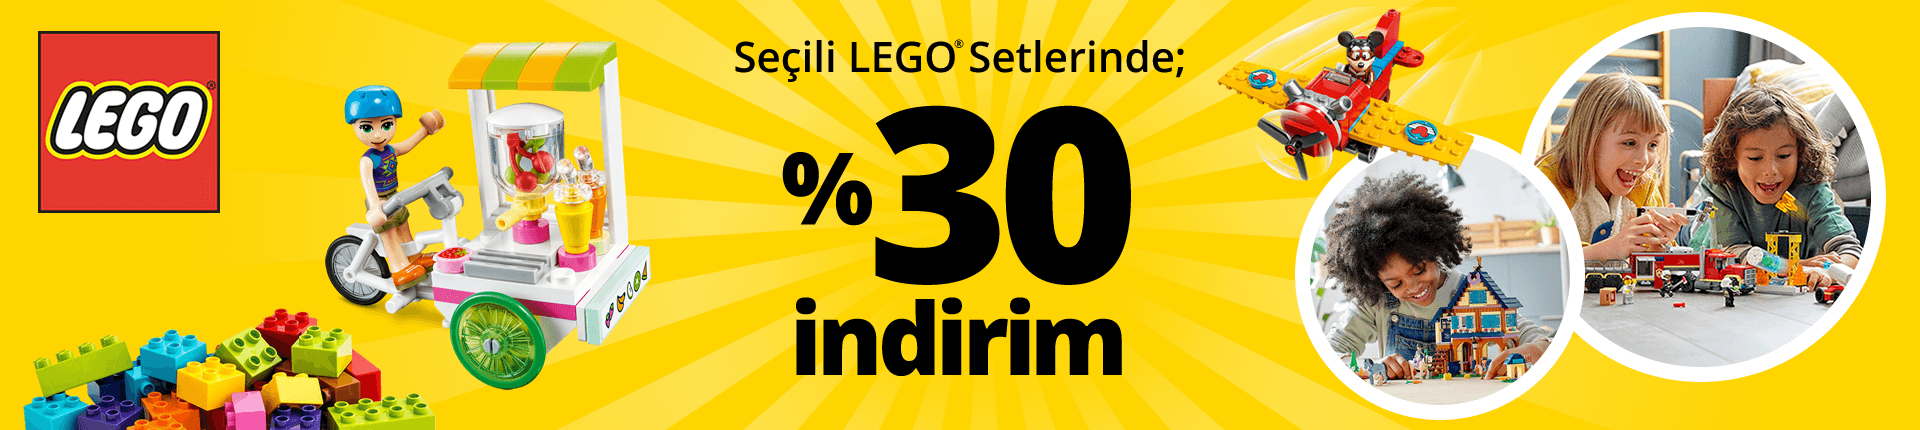 Lego 30